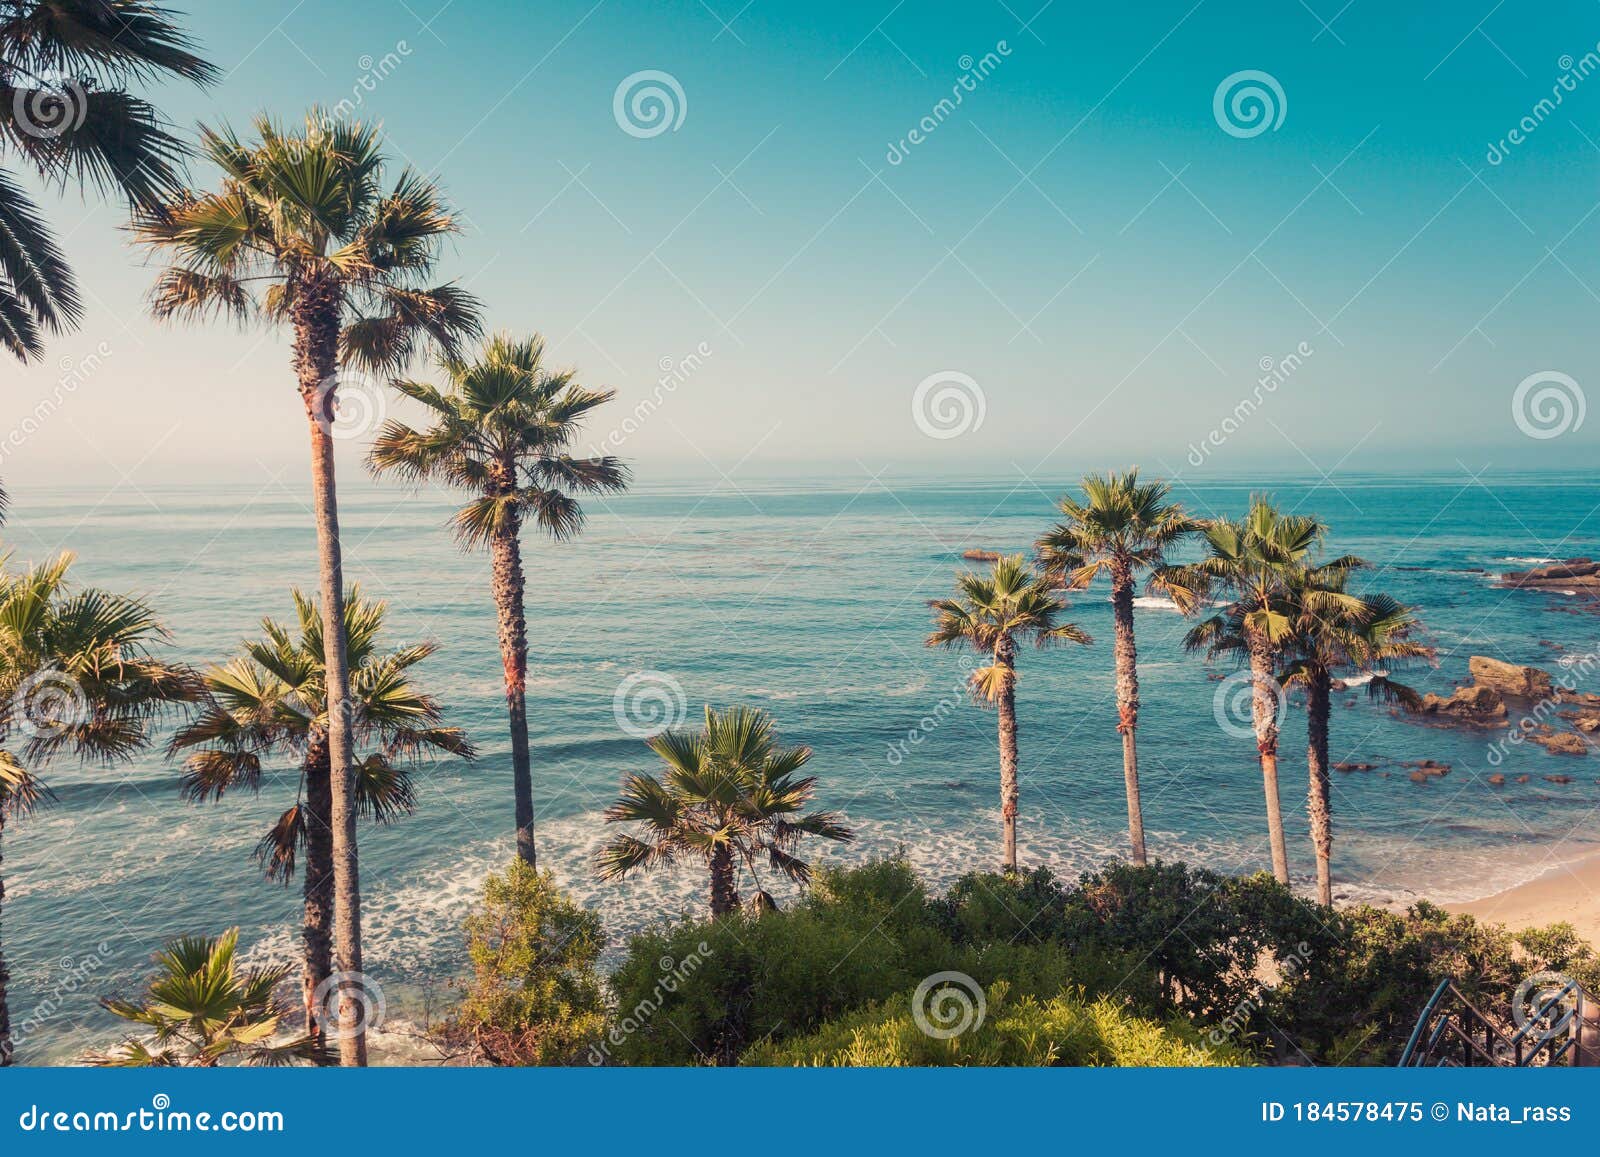 palms on a coast of laguna beach